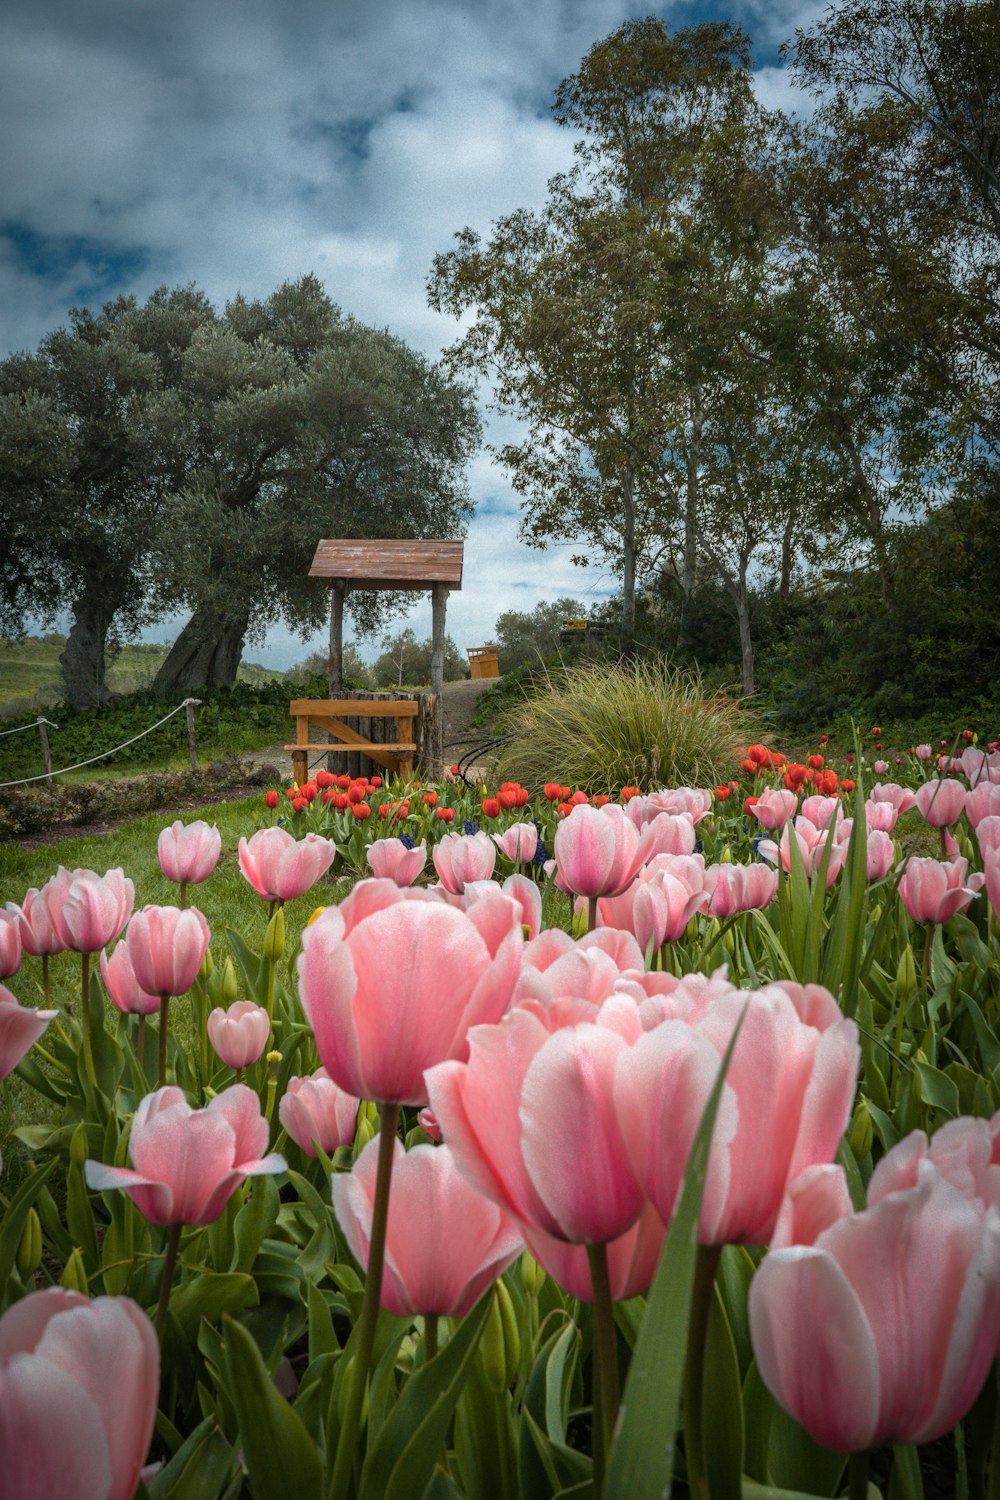 Tulipes roses près d’un banc en bois brun sous un ciel bleu pendant la journée